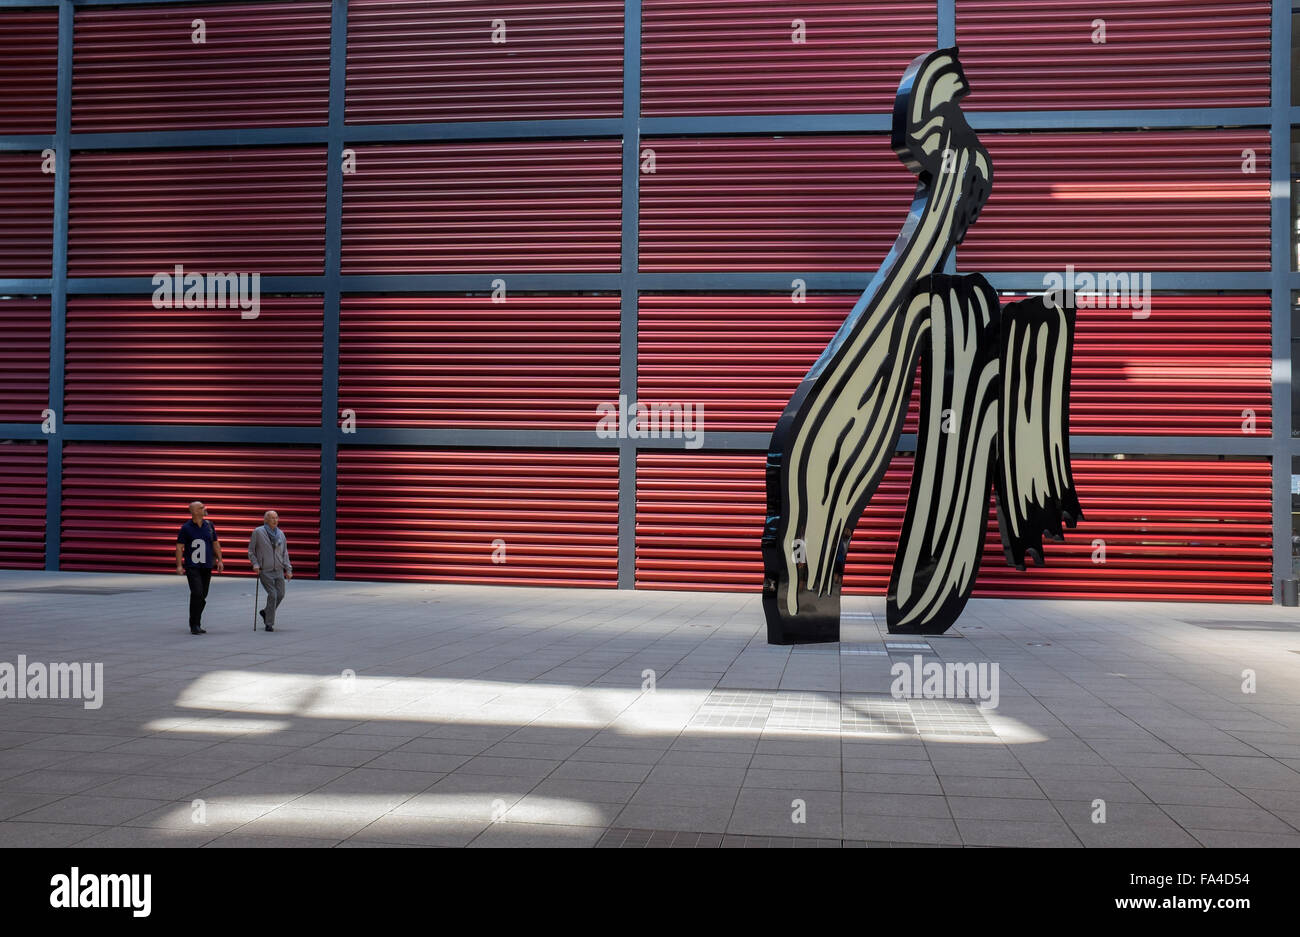 Lichtenstein Pinselstrich Bildhauerei an das Museum Reina Sofia in Madrid Stockfoto